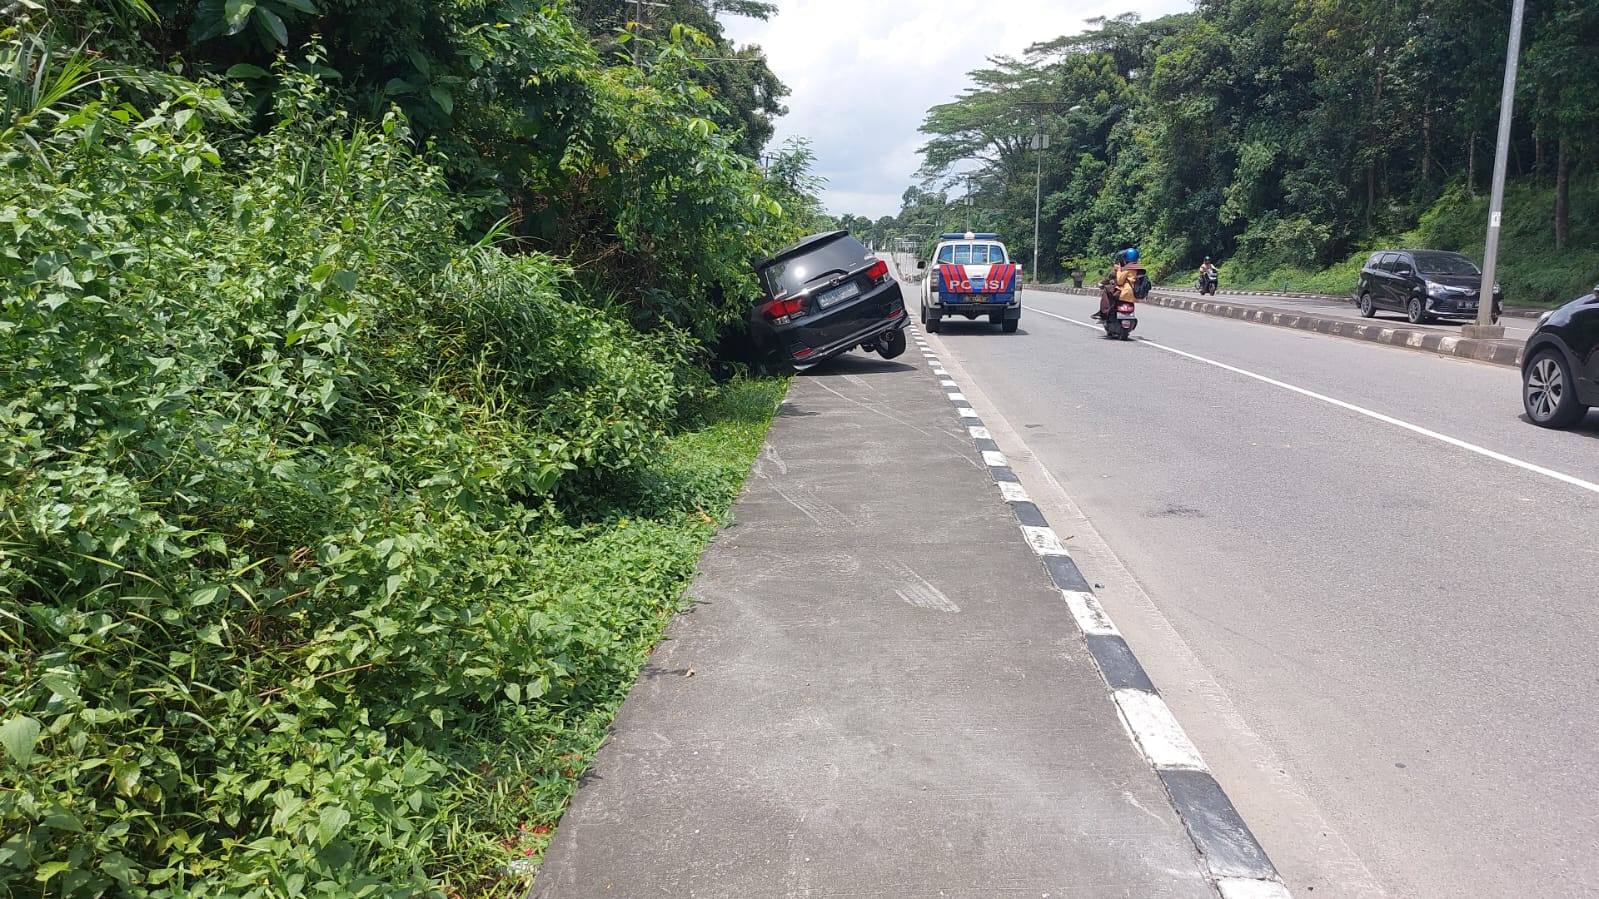 VIDEO: Mobil Tabrak Trotoar Dekat Bukit Sintuk, Panik Disenggol Pick-up